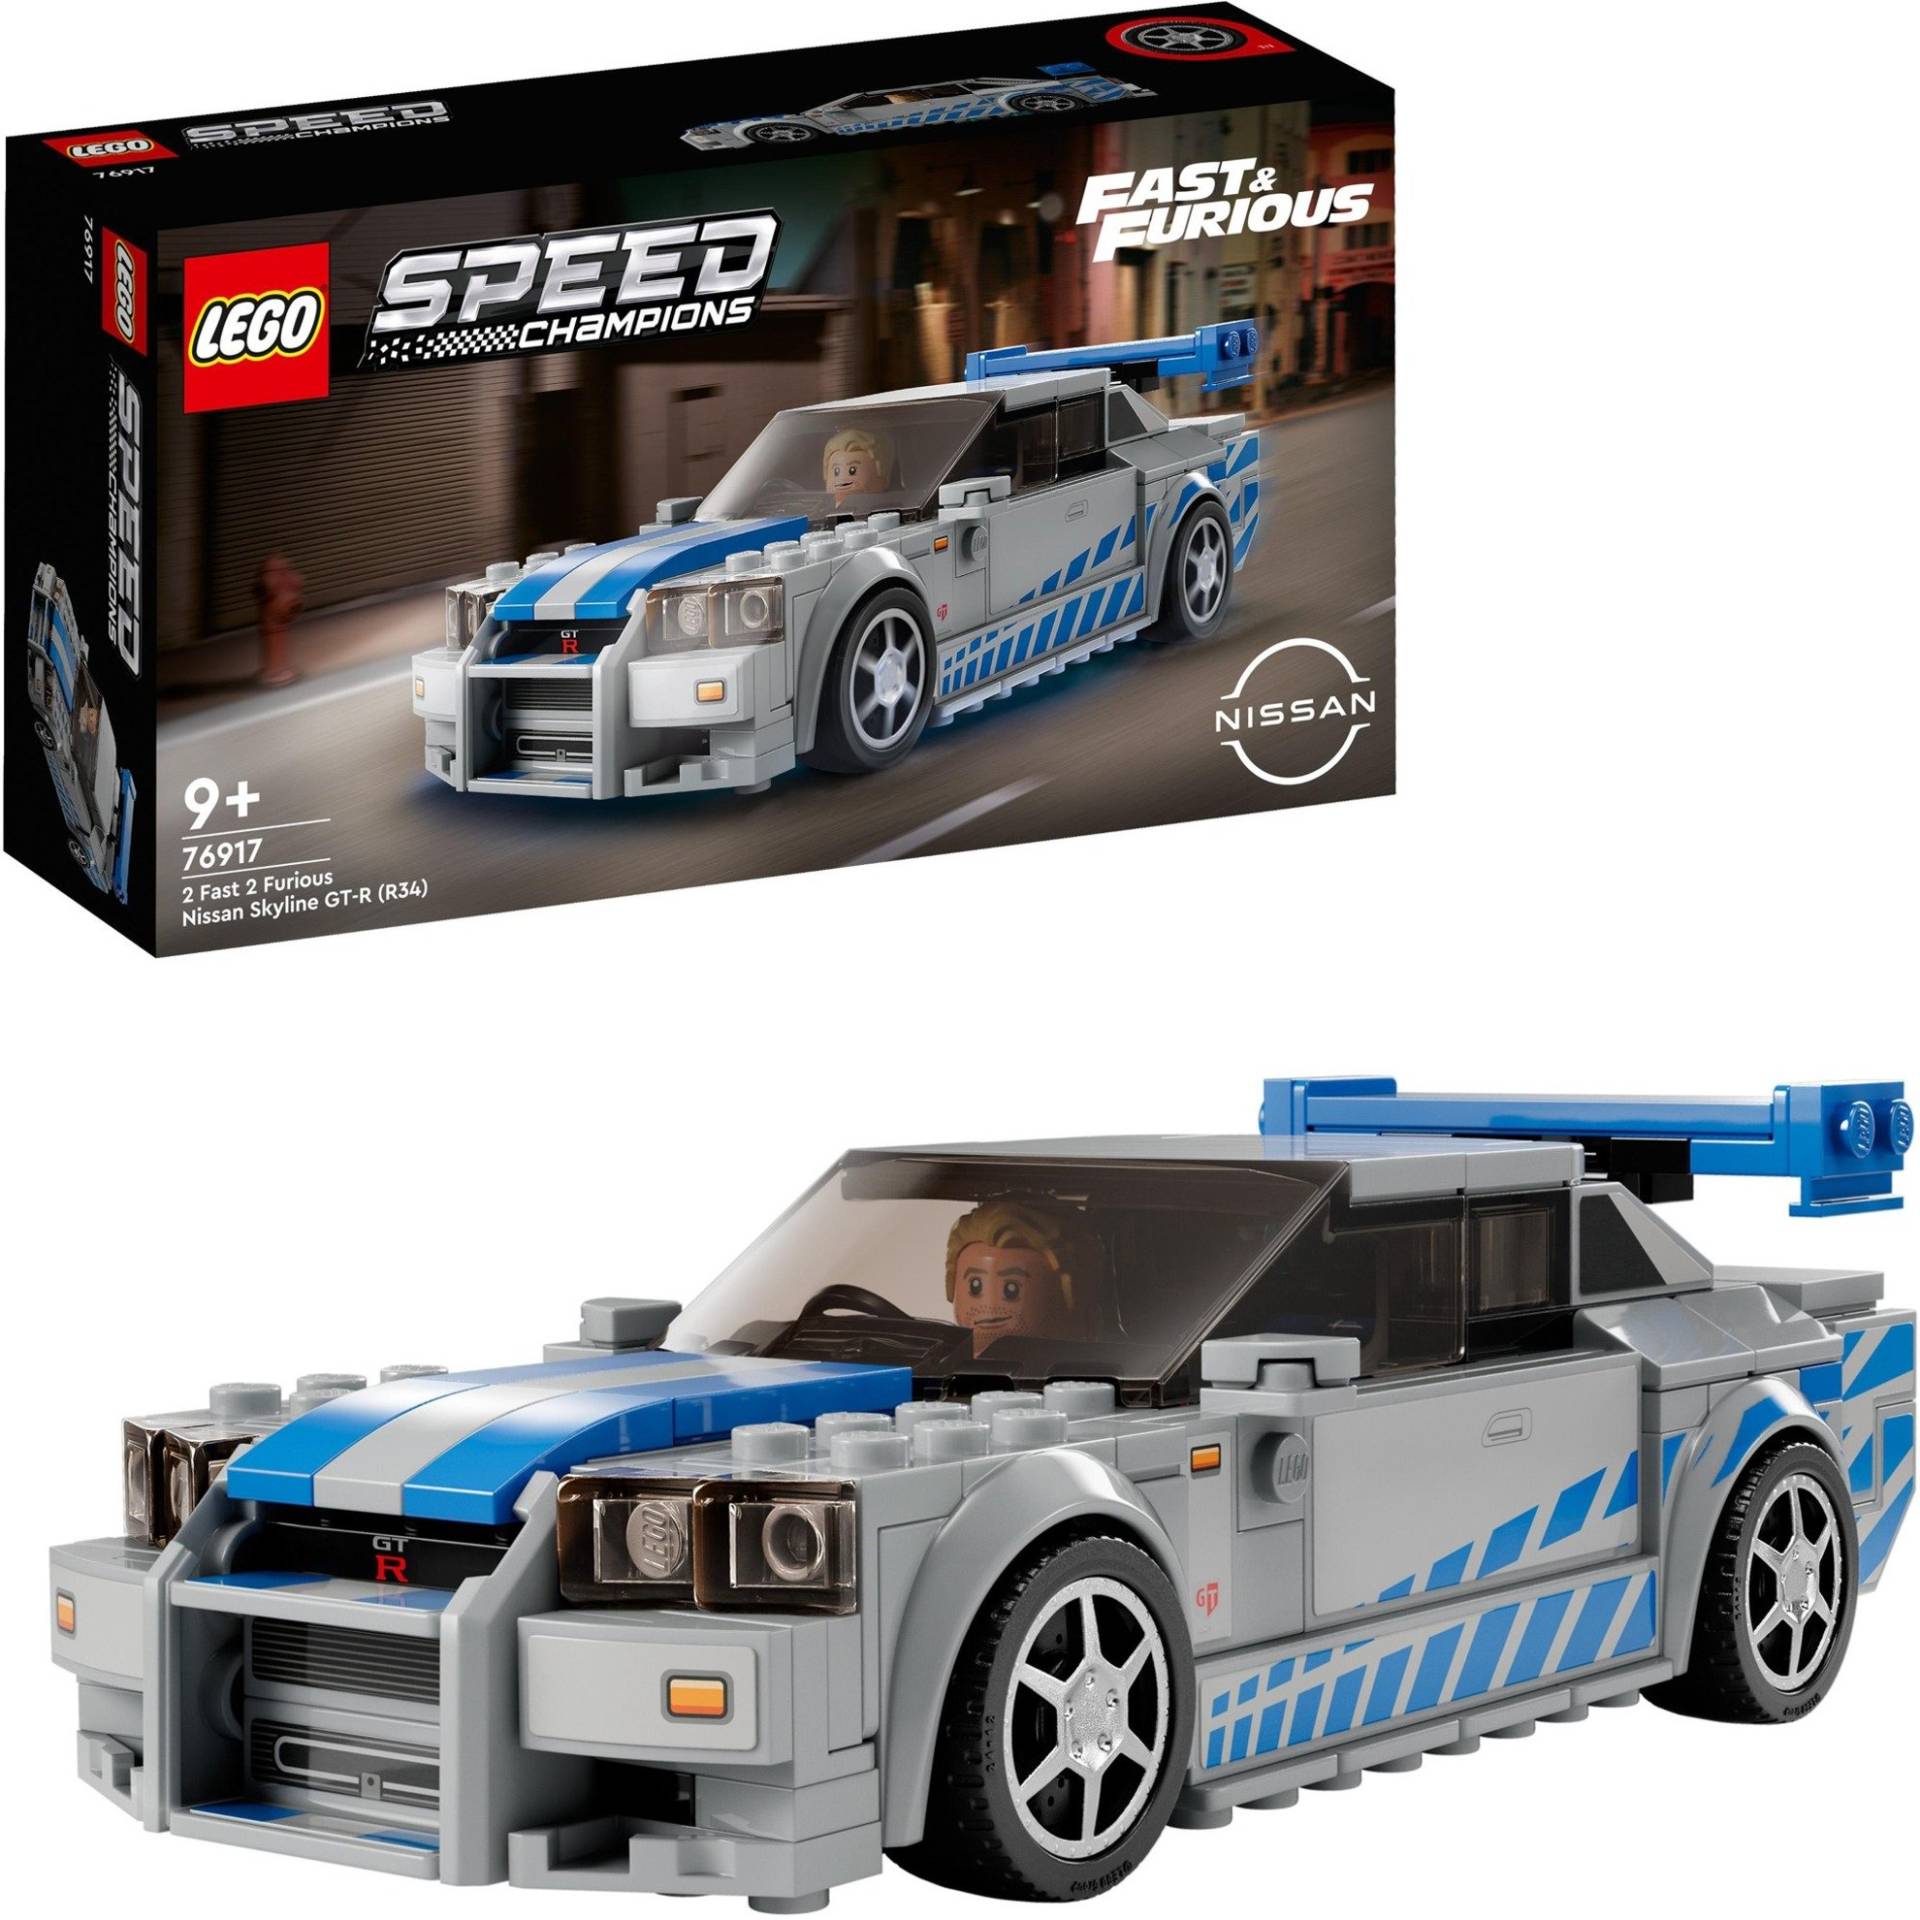 76917 Speed Champions: 2 Fast 2 Furious – Nissan Skyline GT-R, Konstruktionsspielzeug von Lego